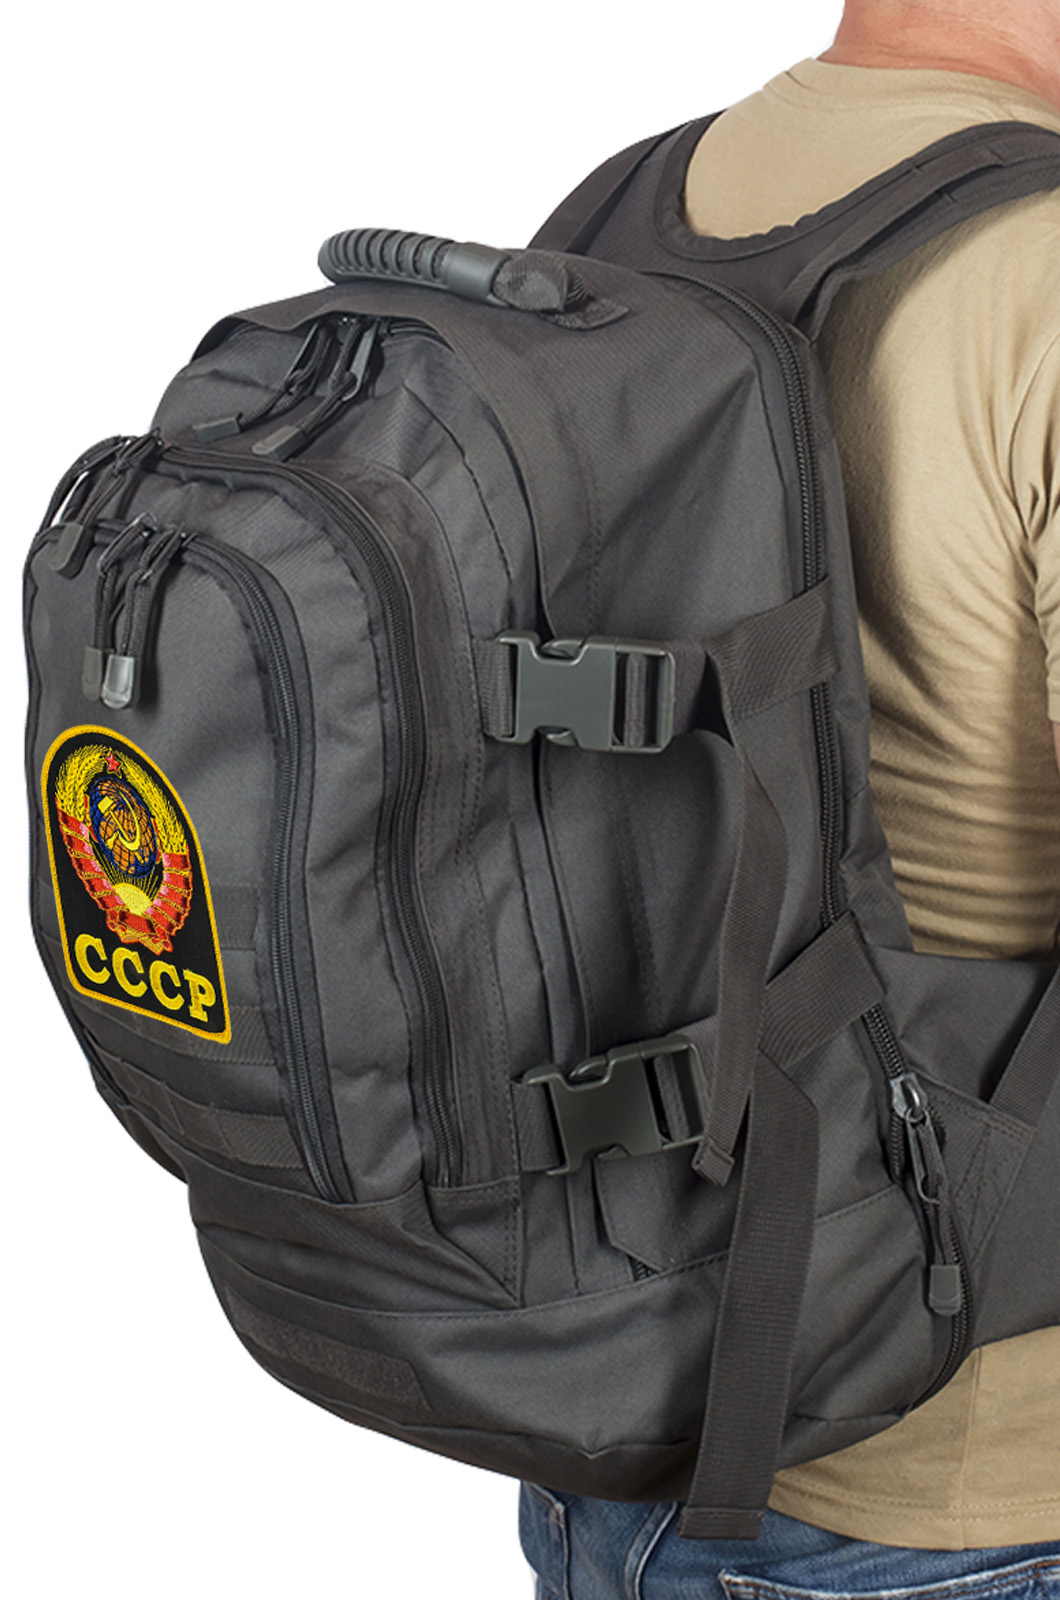 Универсальный рюкзак для города и полевых выходов 3-Day Expandable Backpack 08002A Dark Grey с эмблемой СССР 